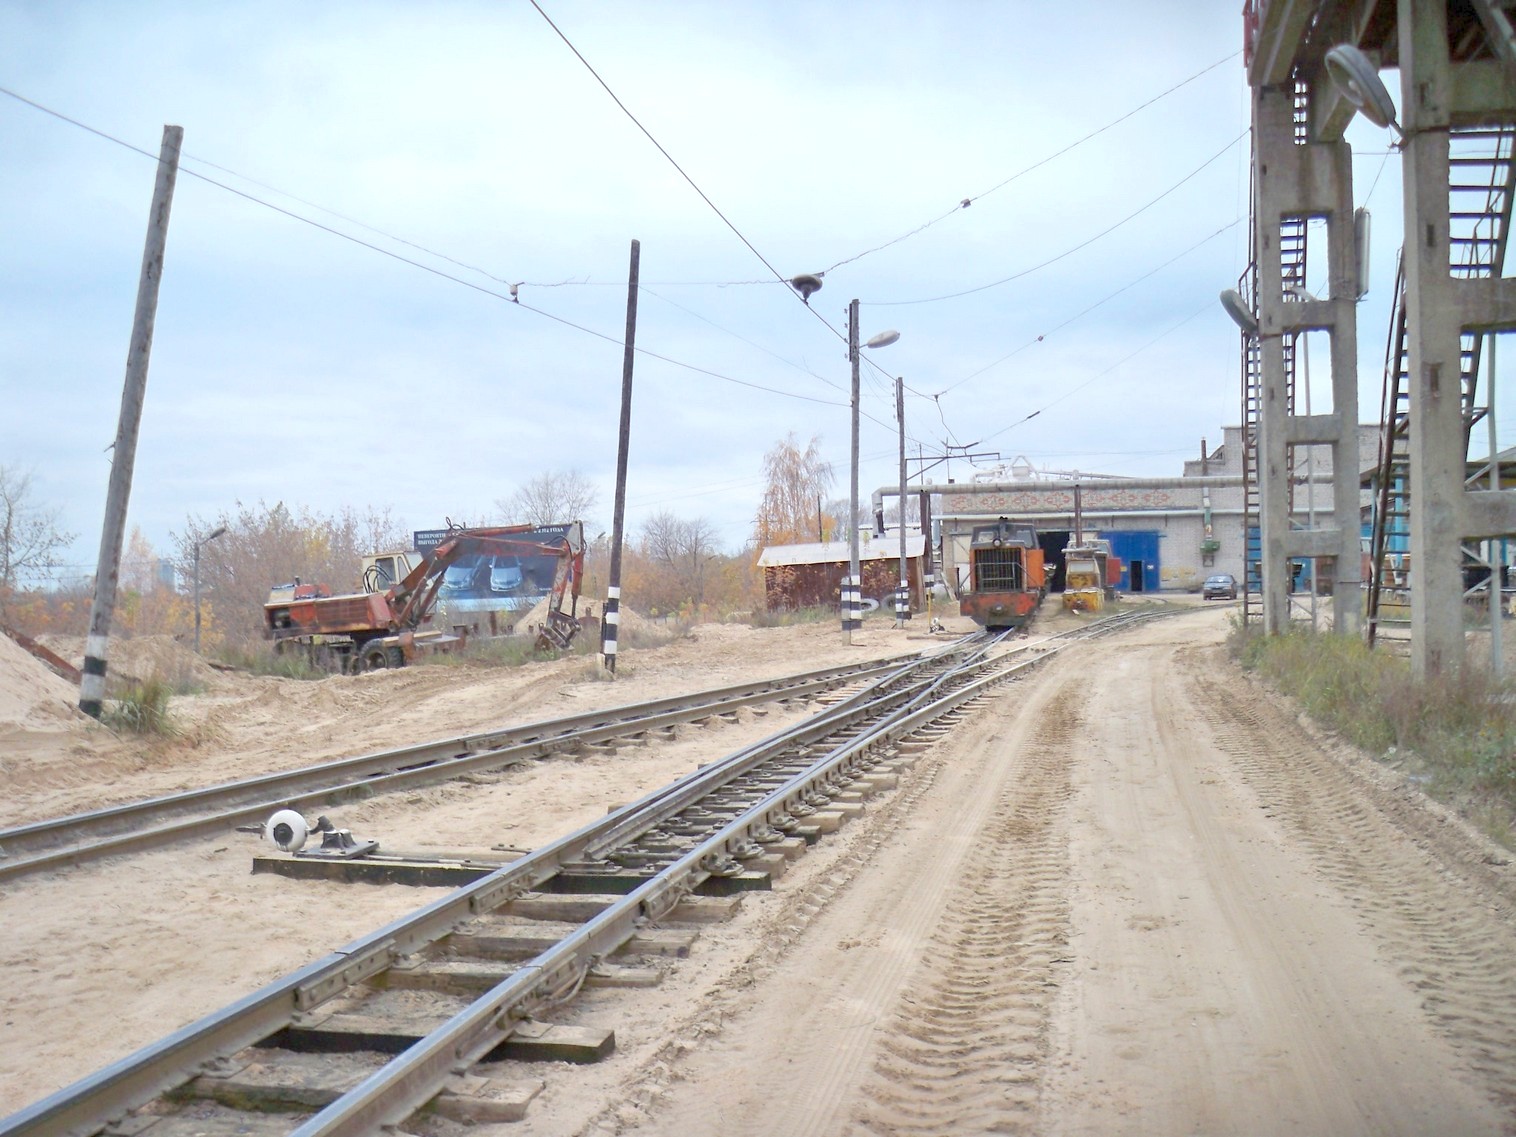 Узкоколейная железная дорога  Тверского комбината строительных материалов №2 — фотографии, сделанные в 2013 году (часть 5)